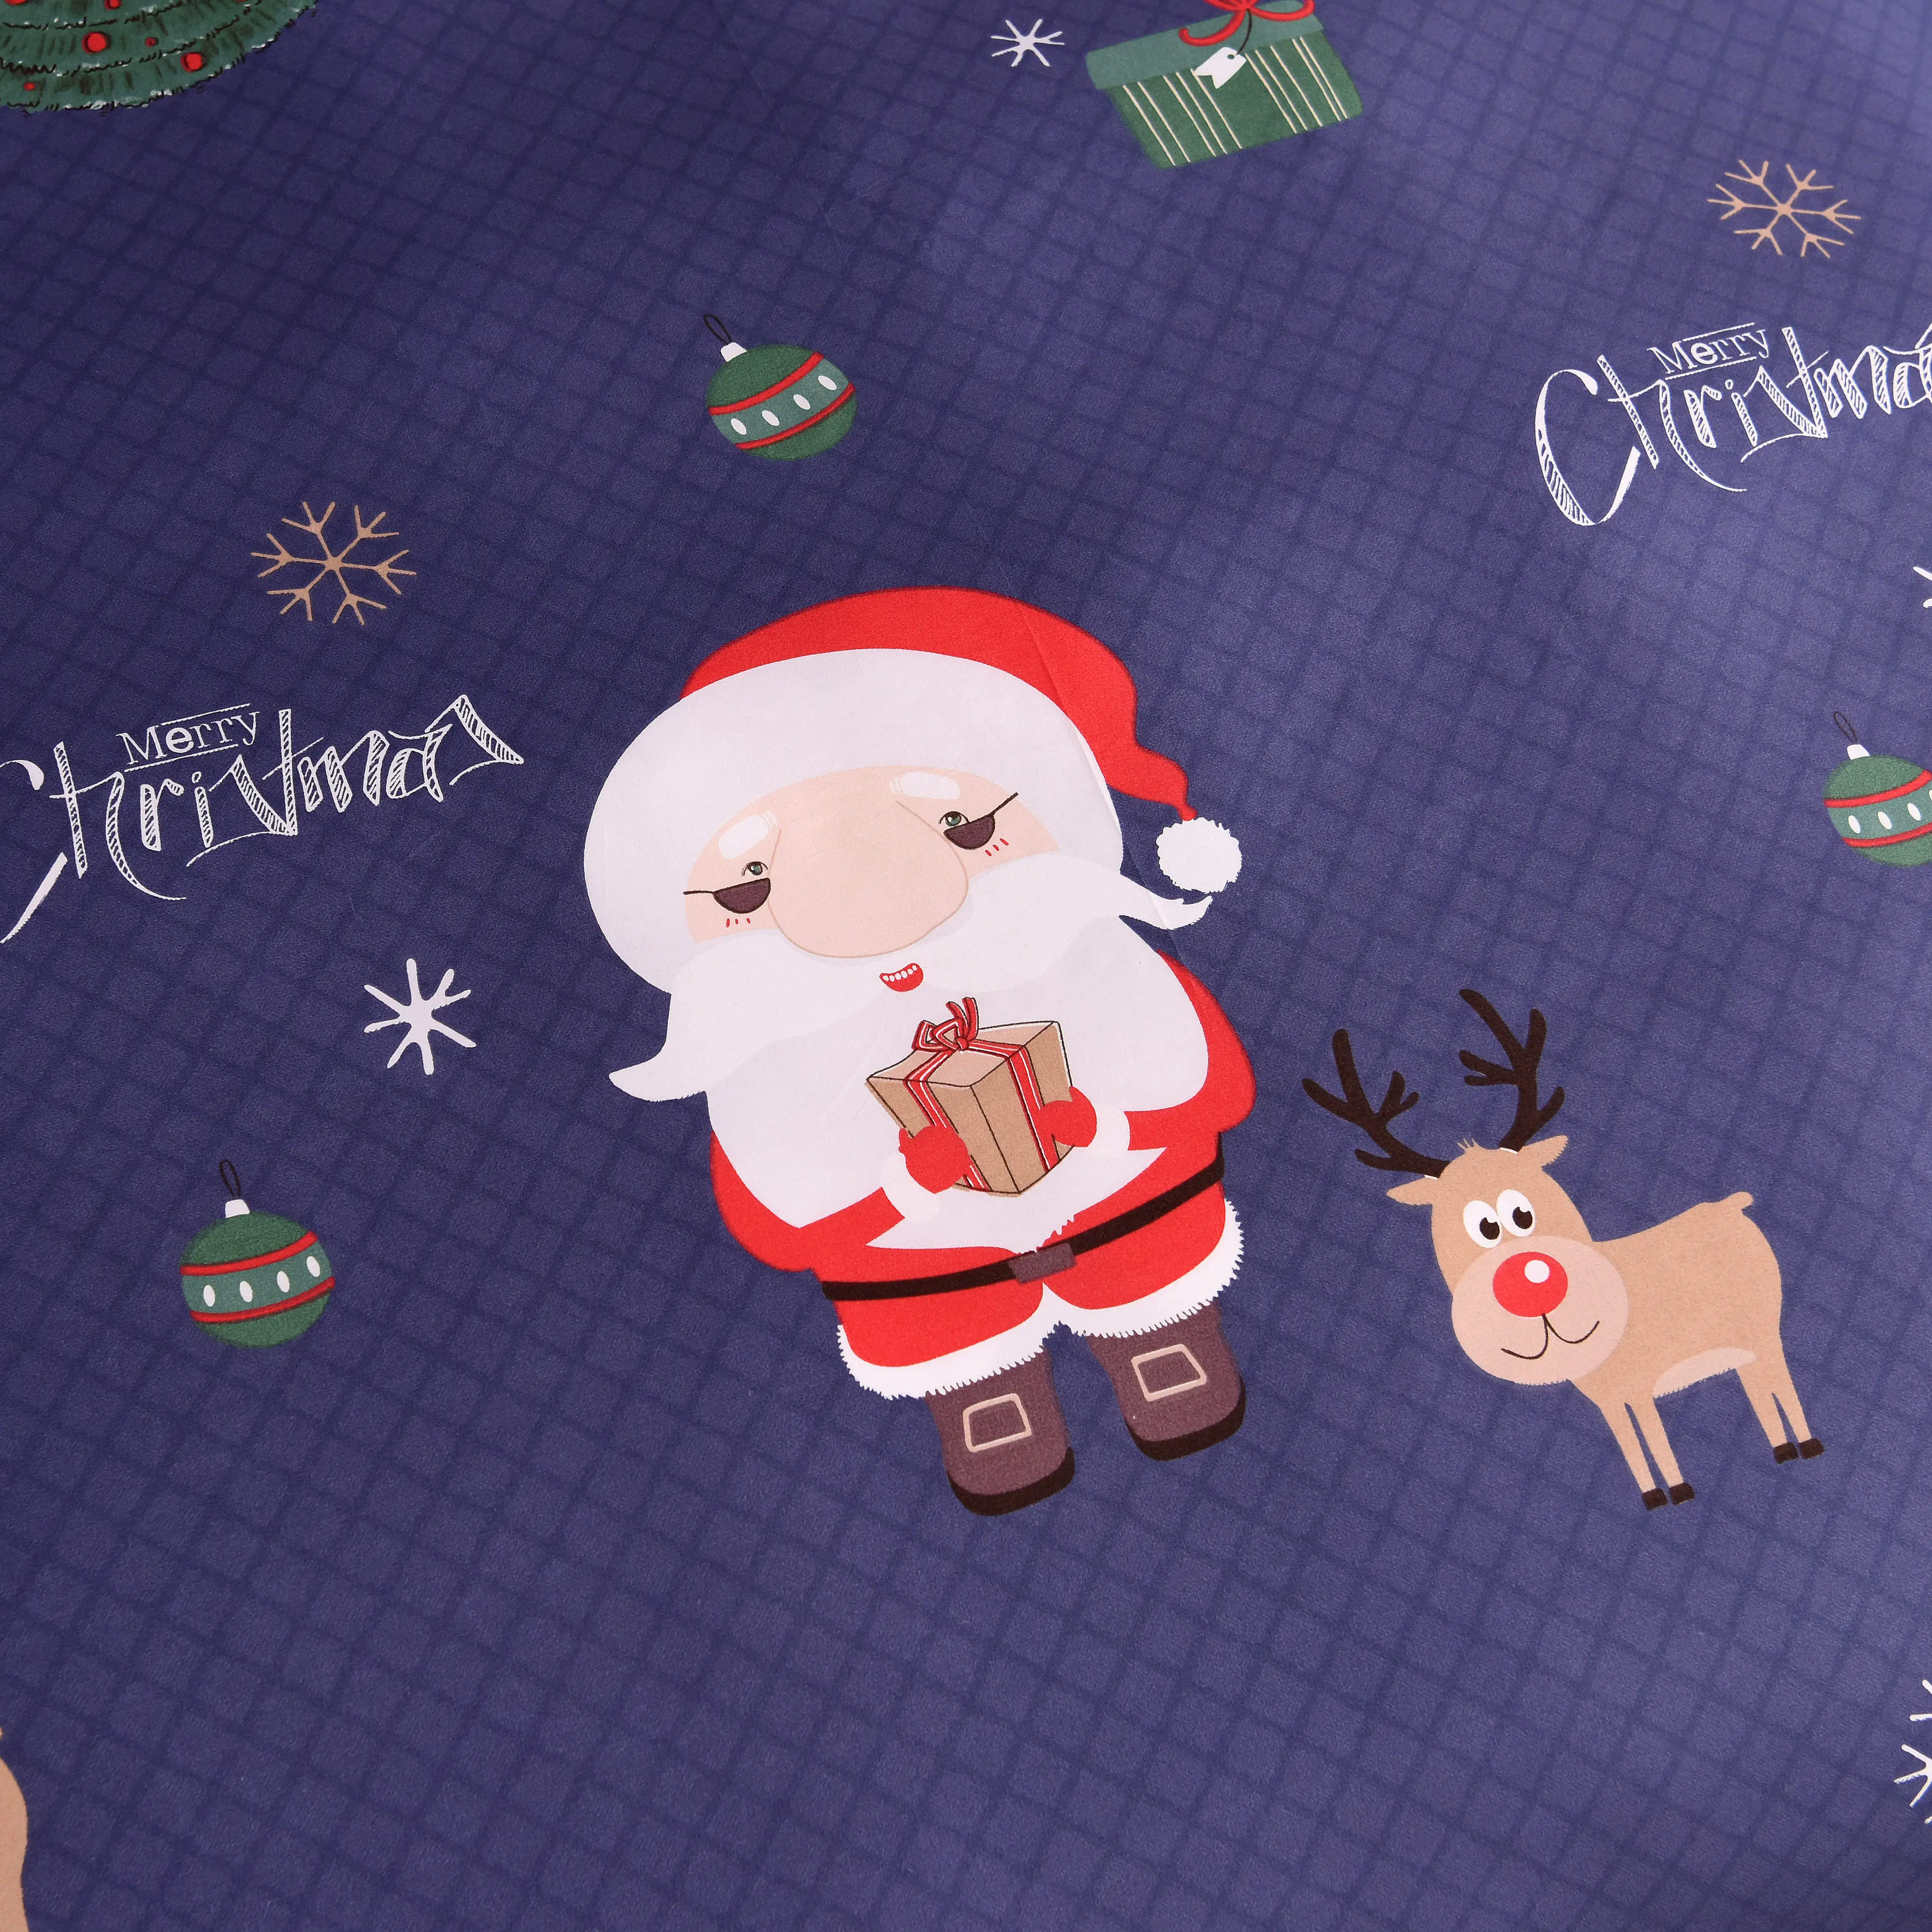 Рождественский комплект белья пододеяльник с наволочками красный Санта Клаус и рождественская ёлка, олень домашний текстиль 3 шт Прямая поставка